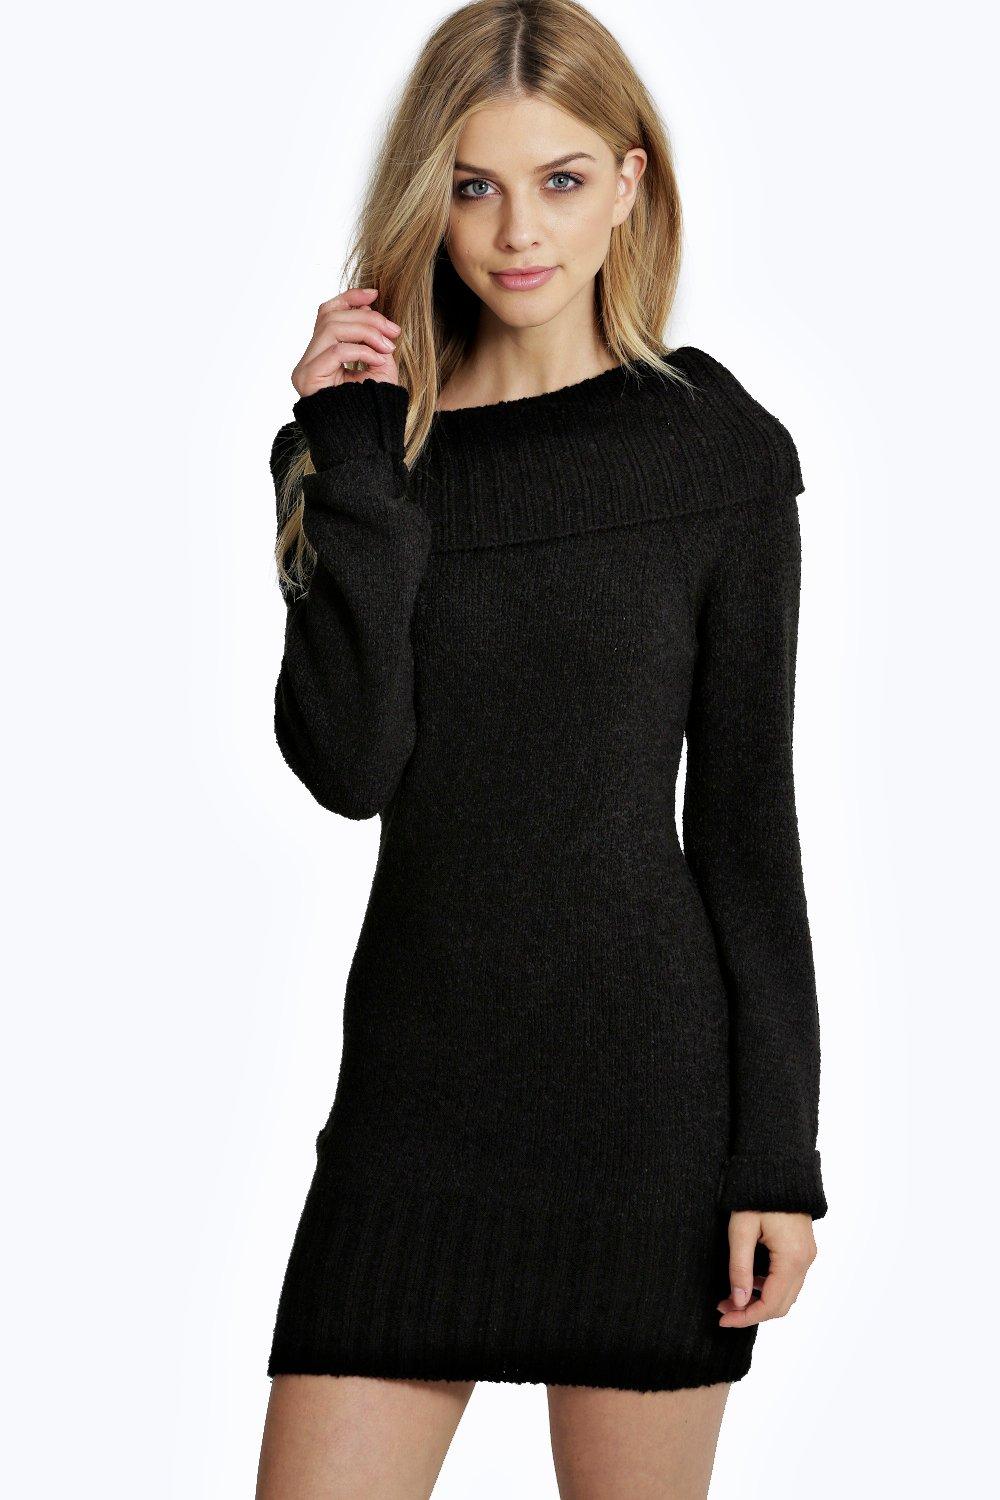 Clara Bardot Knitted Dress at boohoo.com